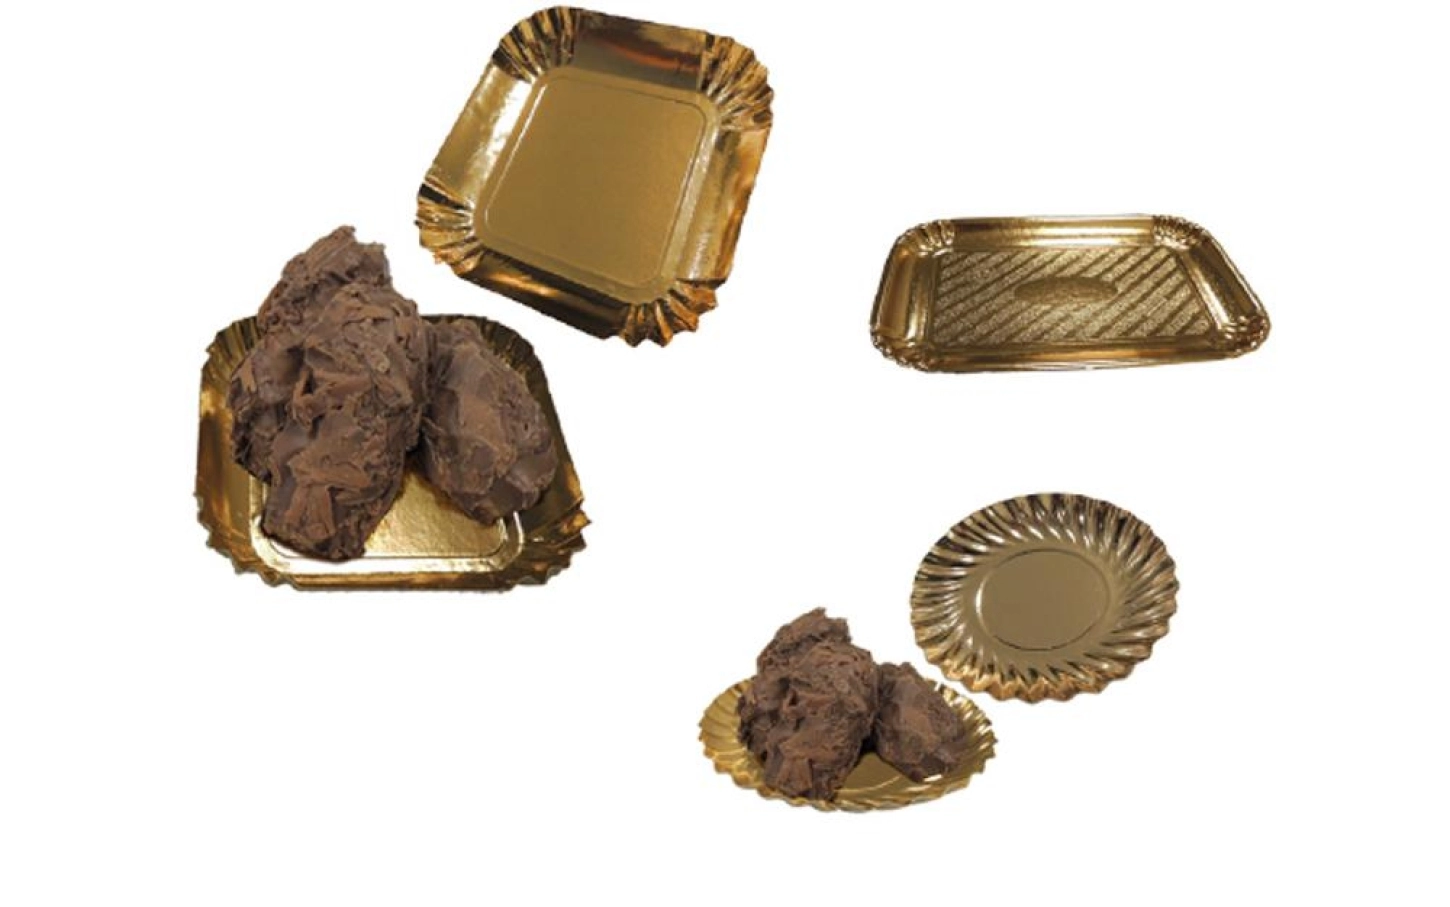 Ace Packaging propose une gamme d'emballages pour la boulangerie.